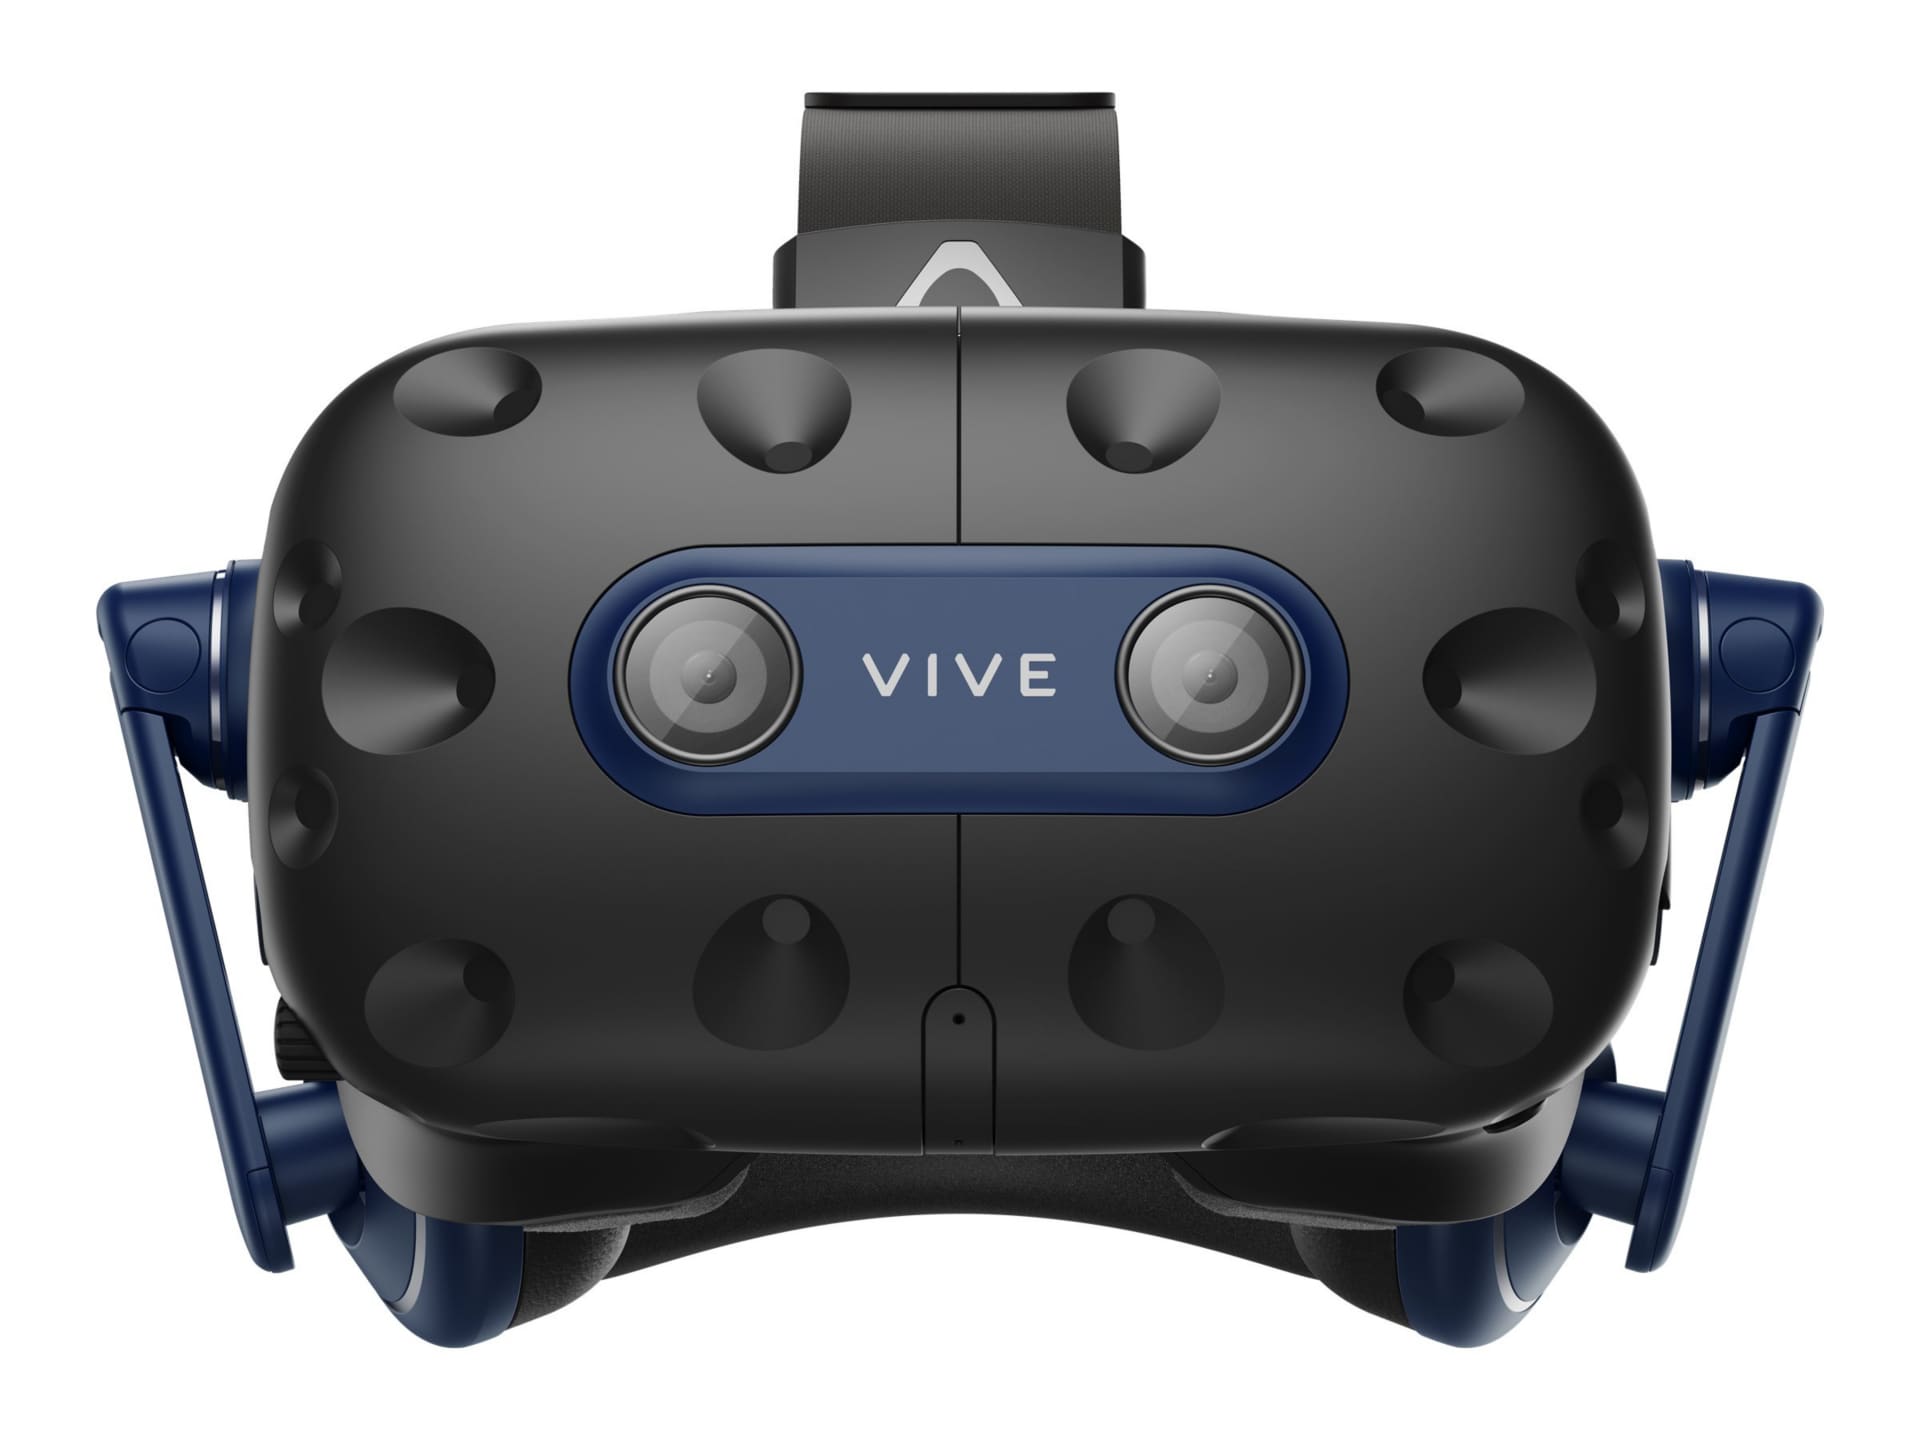 HTC VIVE Pro 2 - virtual reality headset